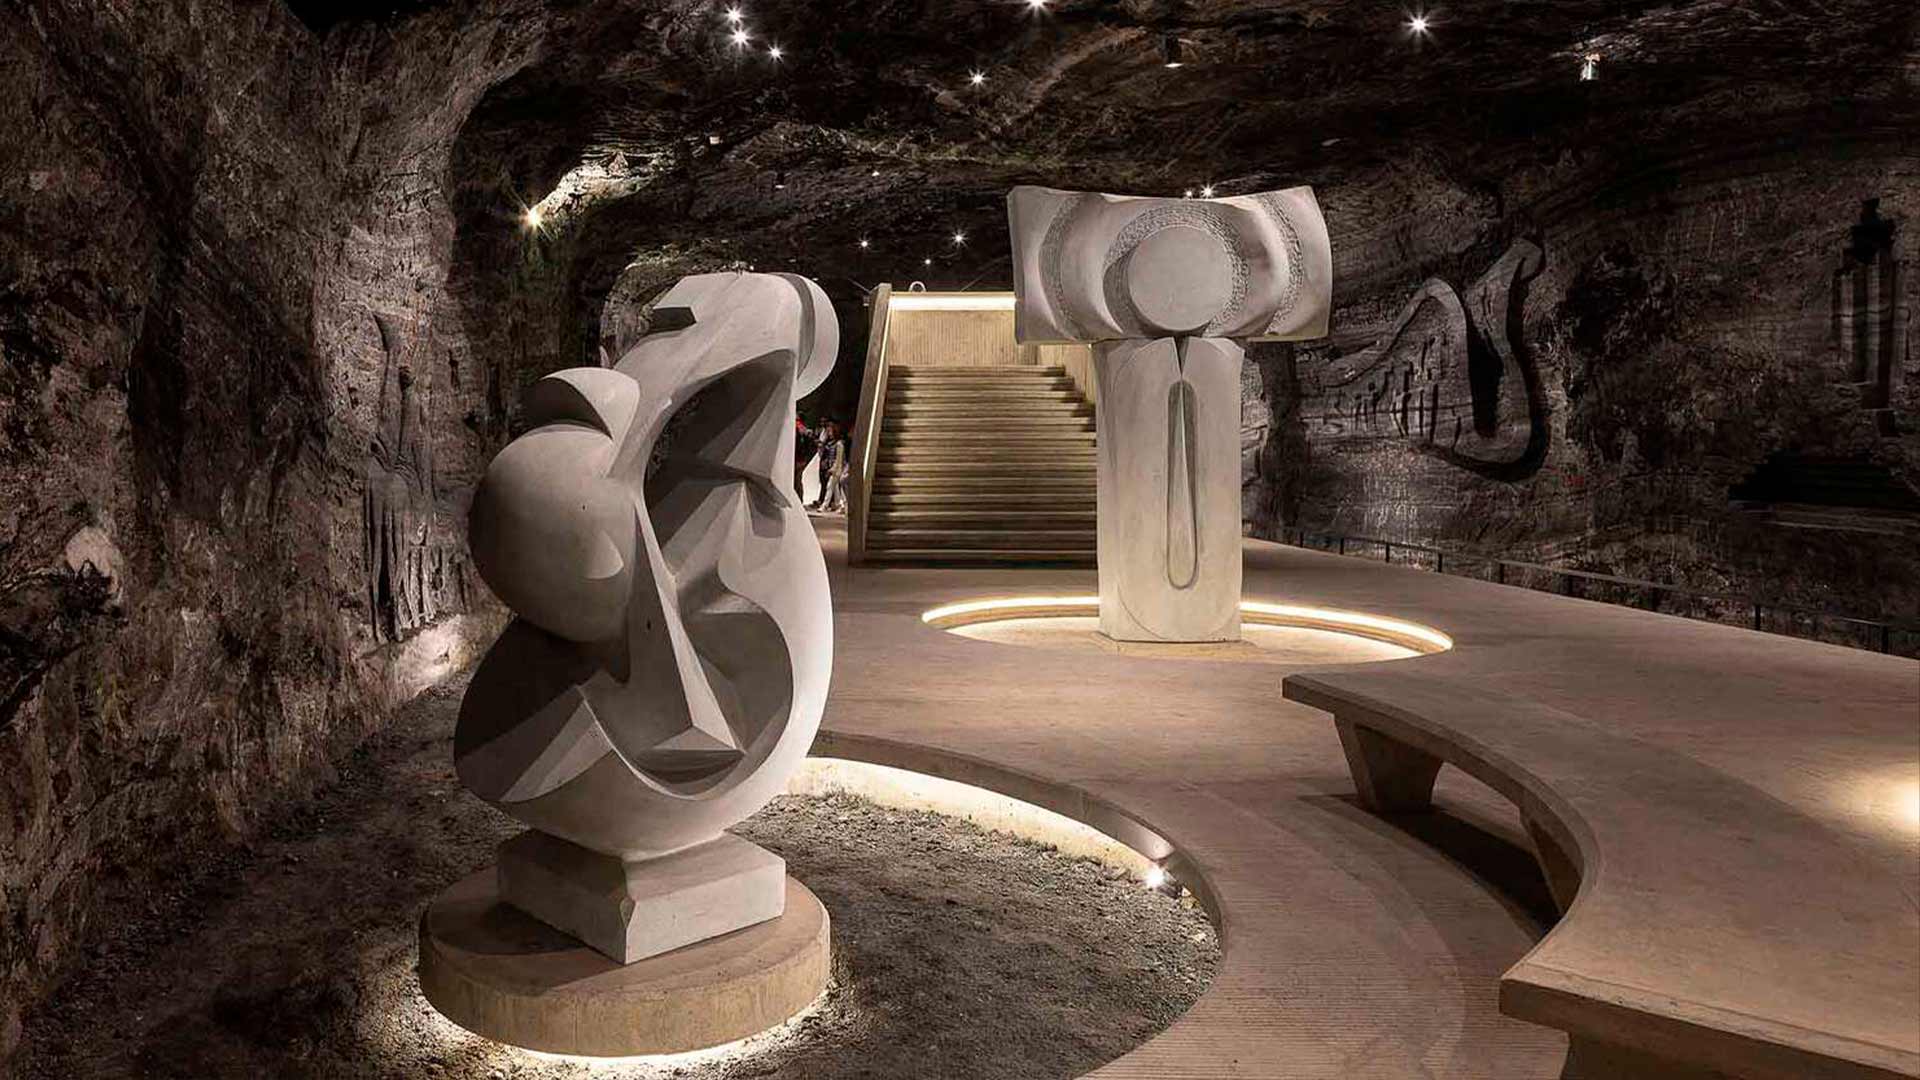 Conoce el impresionante Museo Subterráneo Monumental 180 metros